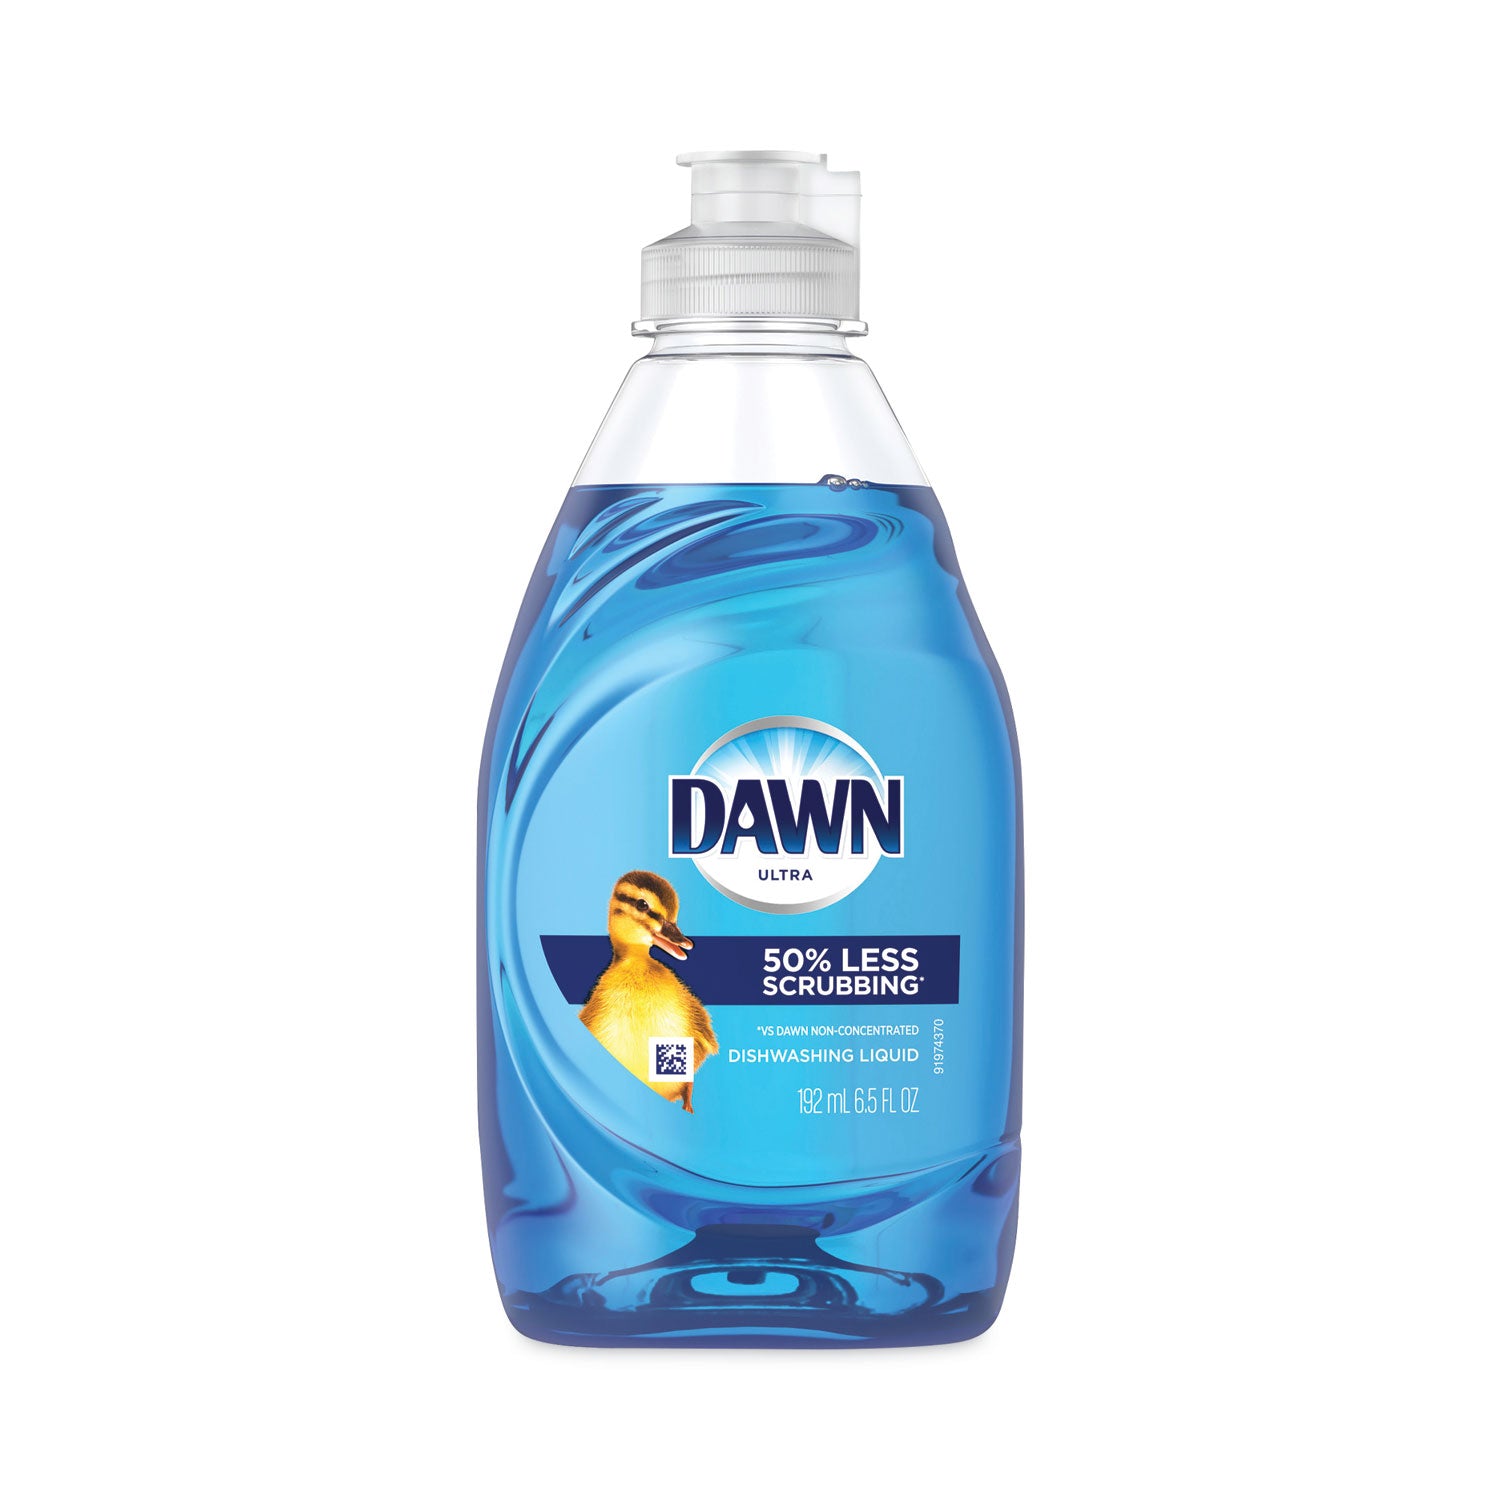 Ultra Liquid Dish Detergent， Dawn Original， 6.5 oz Bottle， 18